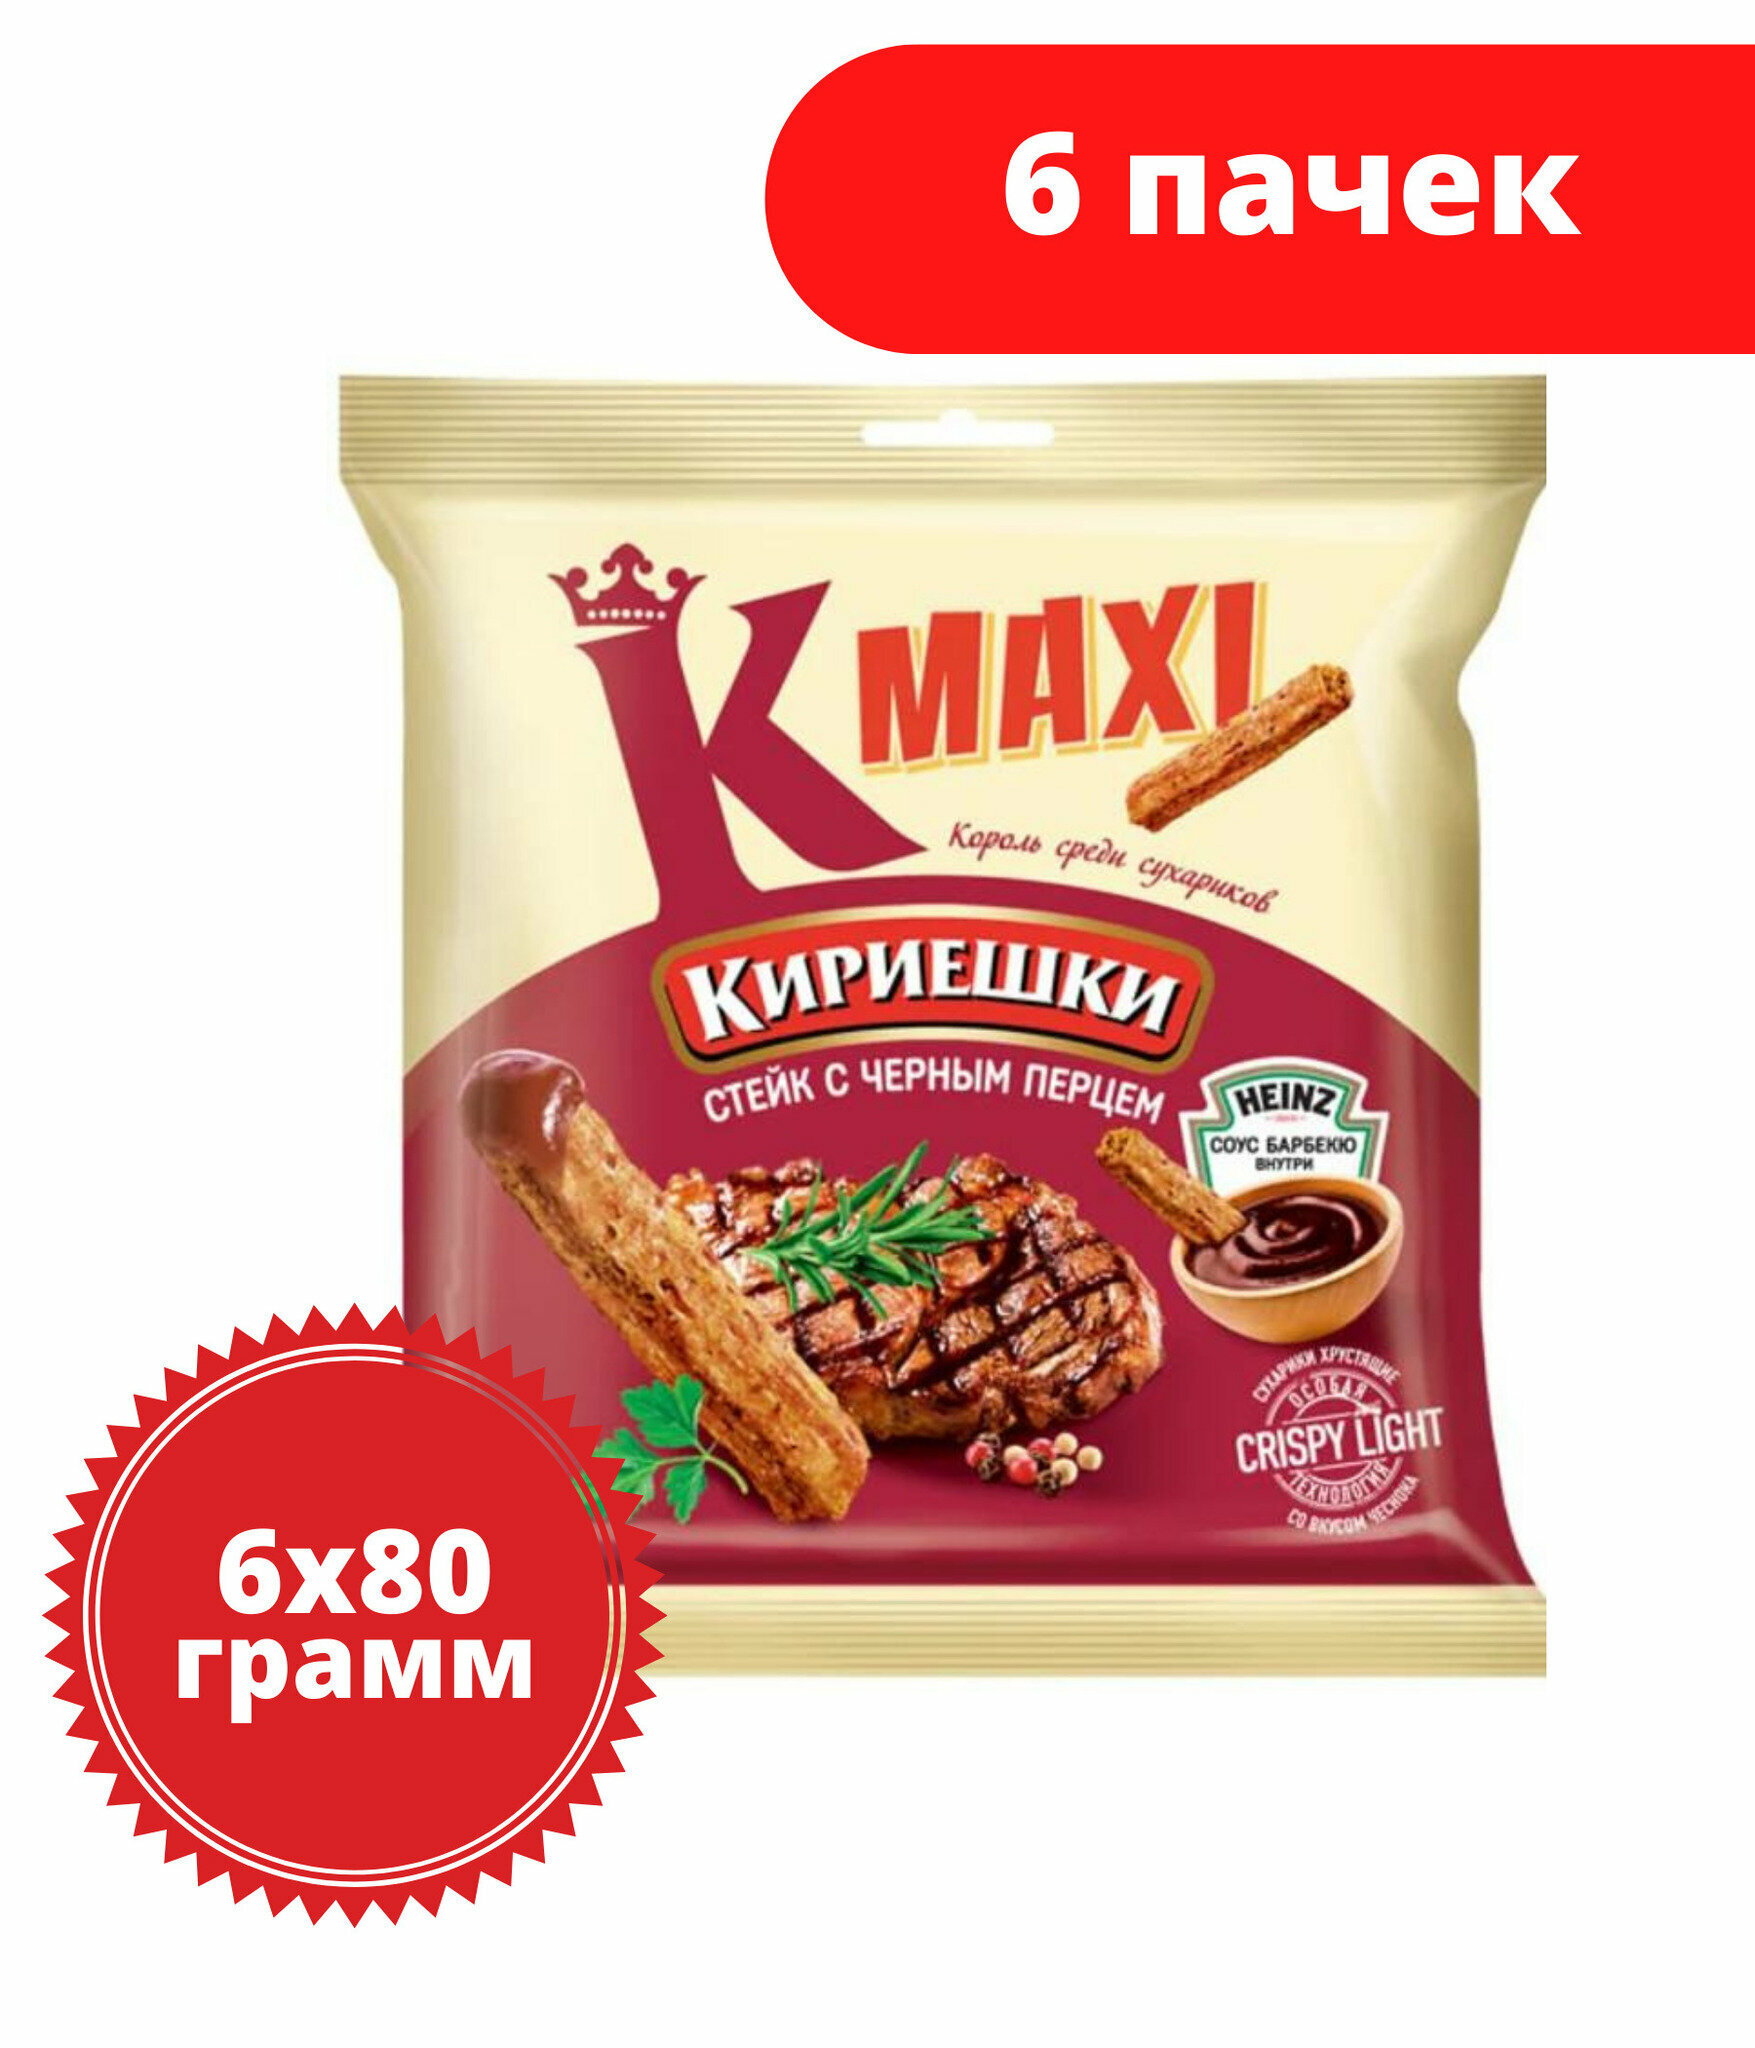 Сухари Кириешки Maxi, сухарики со вкусом стейка с черным перцем и соусом барбекю, 80 г, 6 пачек